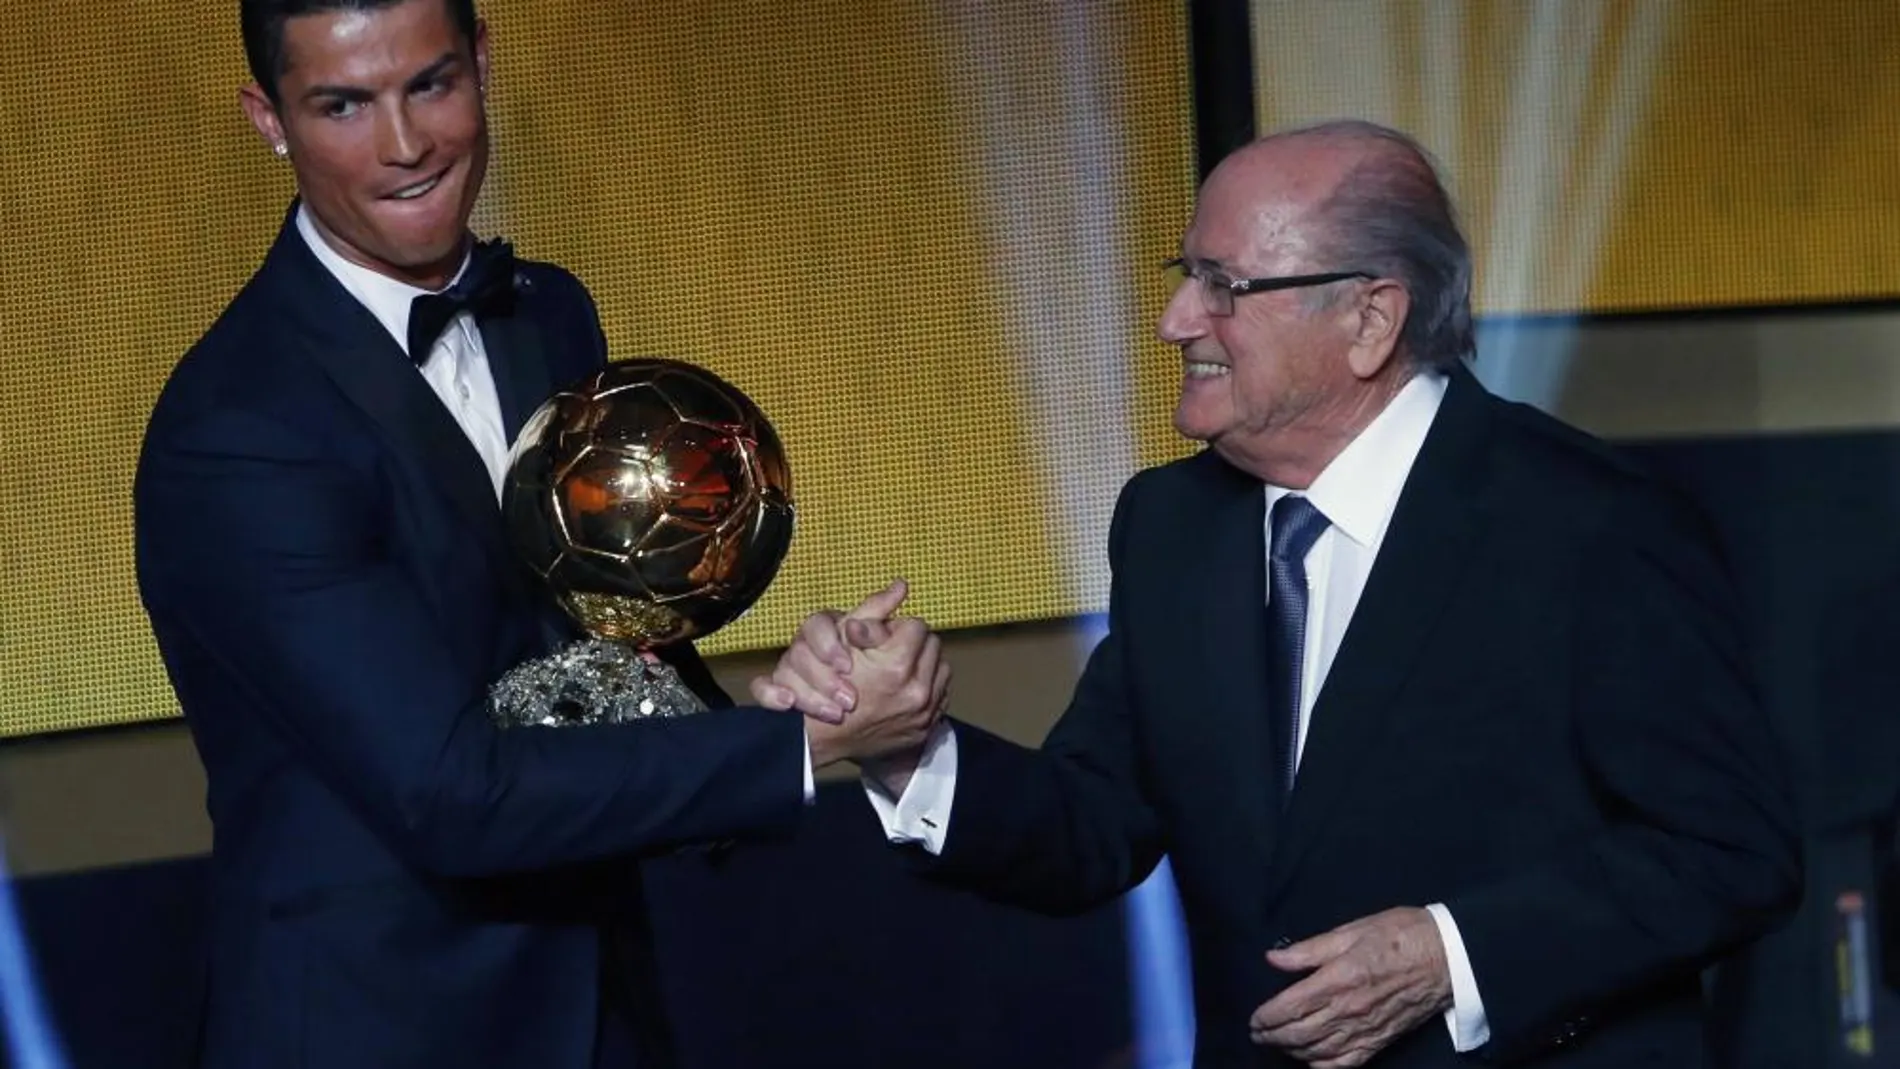 El presidente de la FIFA, Joseph Blatter, saludo a Cristiano Ronaldo tras hacerle entrega del Balón de Oro 2014.